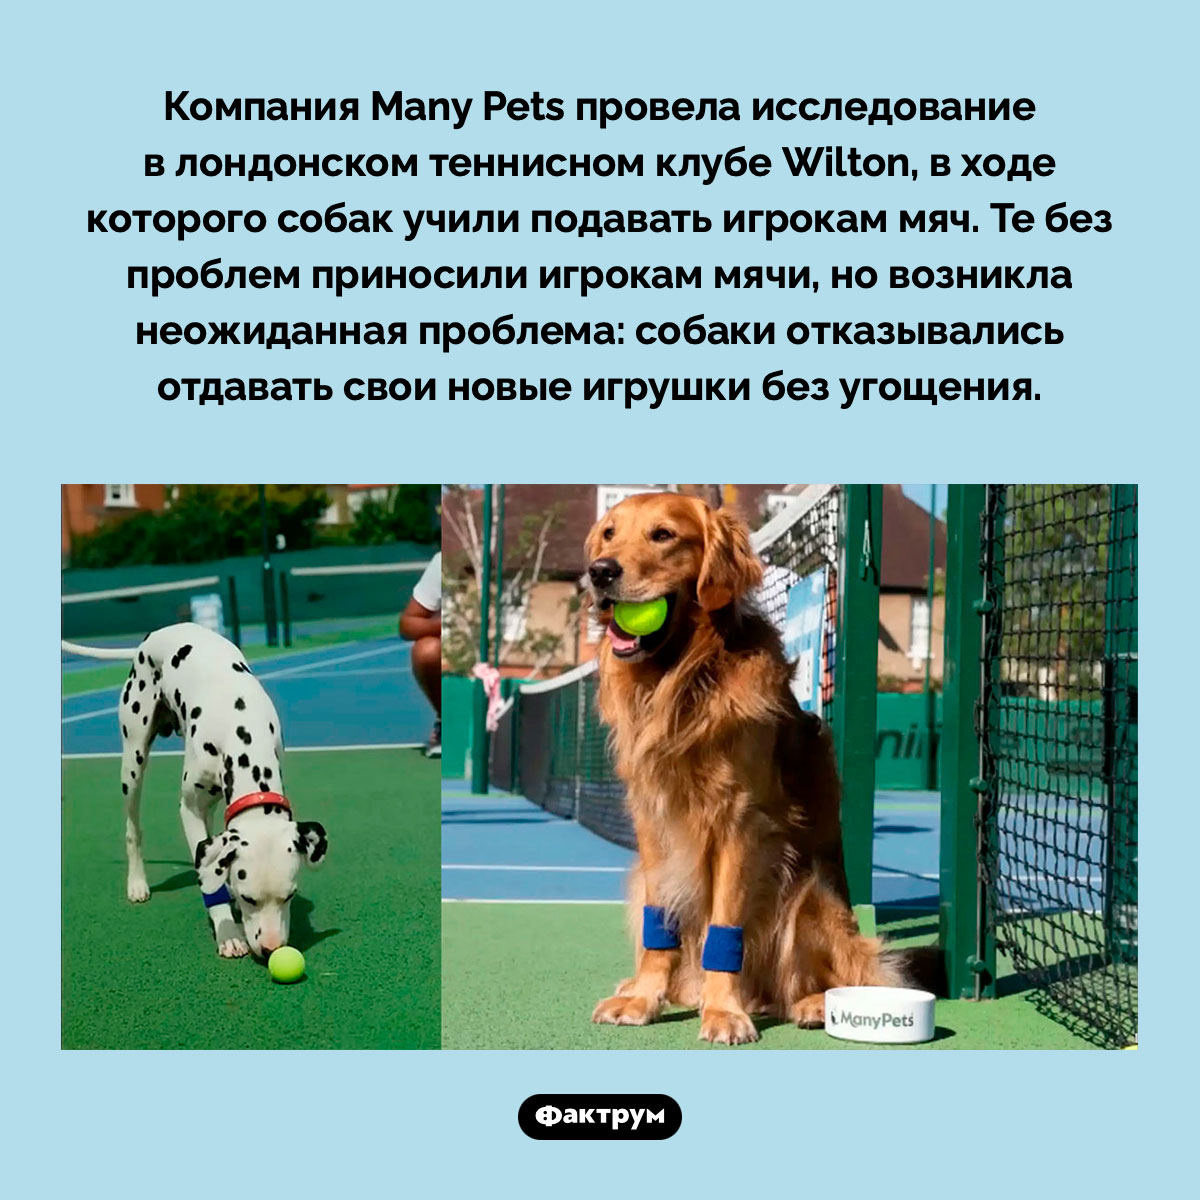 Собаки и теннис. Компания Many Pets провела исследование в лондонском теннисном клубе Wilton, в ходе которого собак учили подавать игрокам мяч. Те без проблем приносили игрокам мячи, но возникла неожиданная проблема: собаки отказывались отдавать свои новые игрушки без угощения.